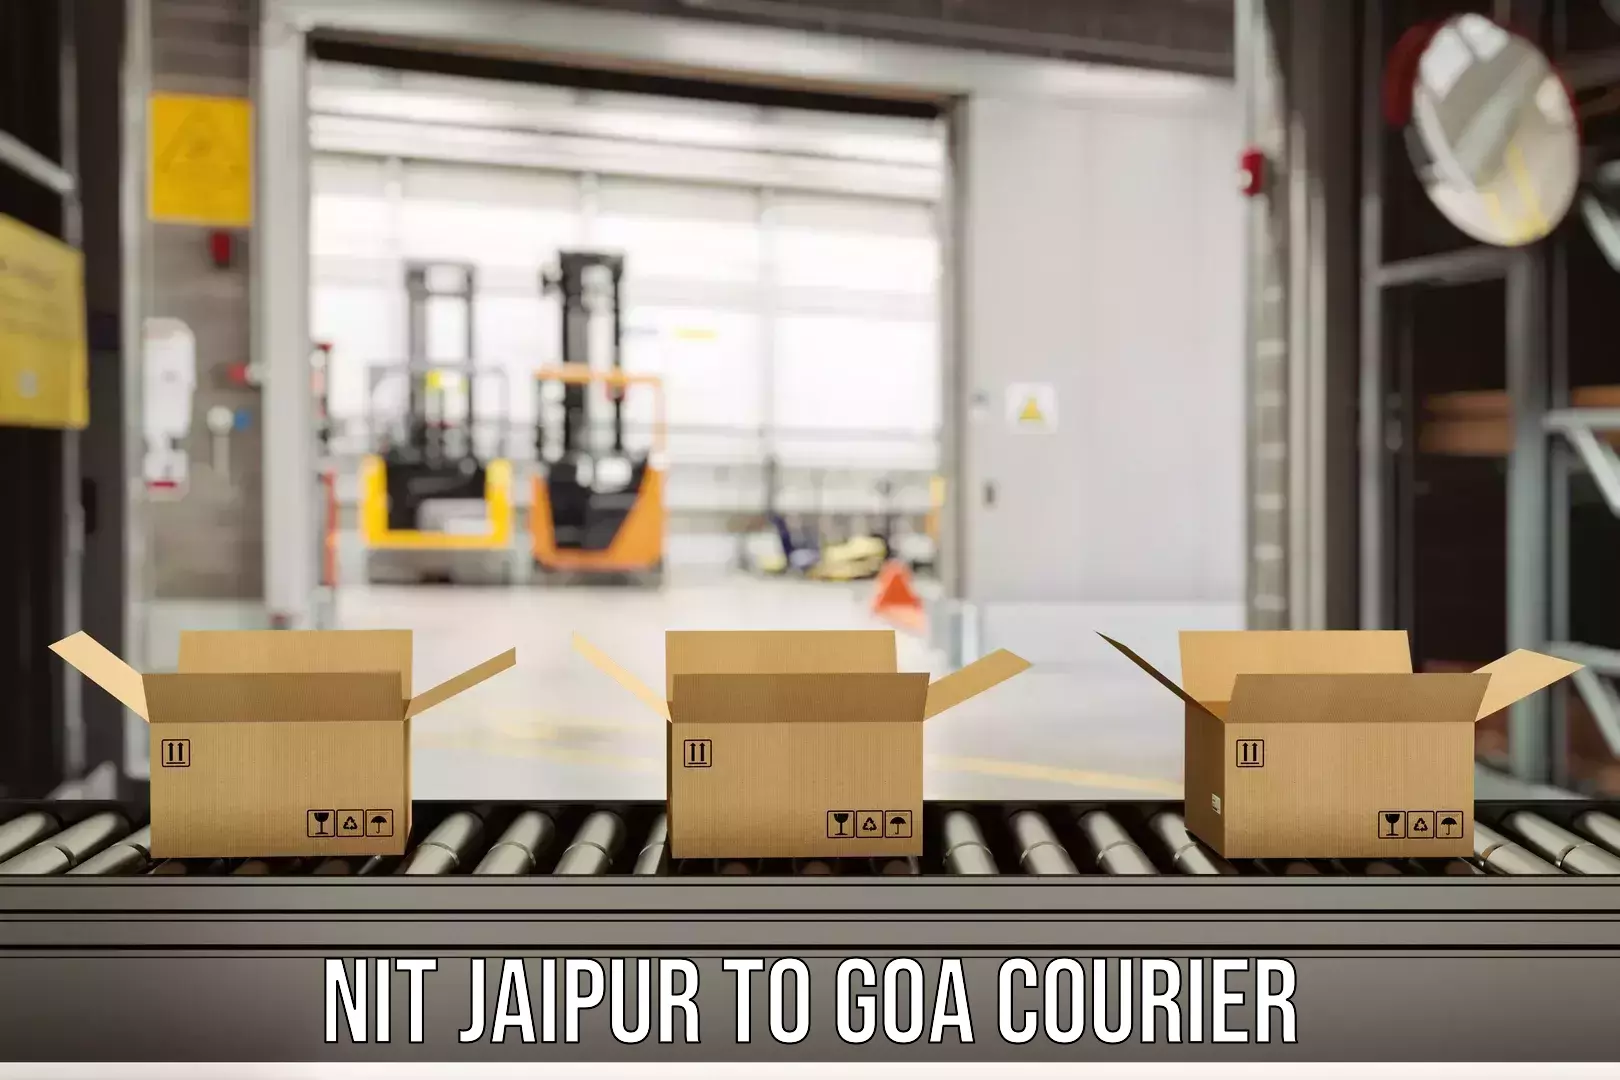 Ocean freight courier NIT Jaipur to Goa